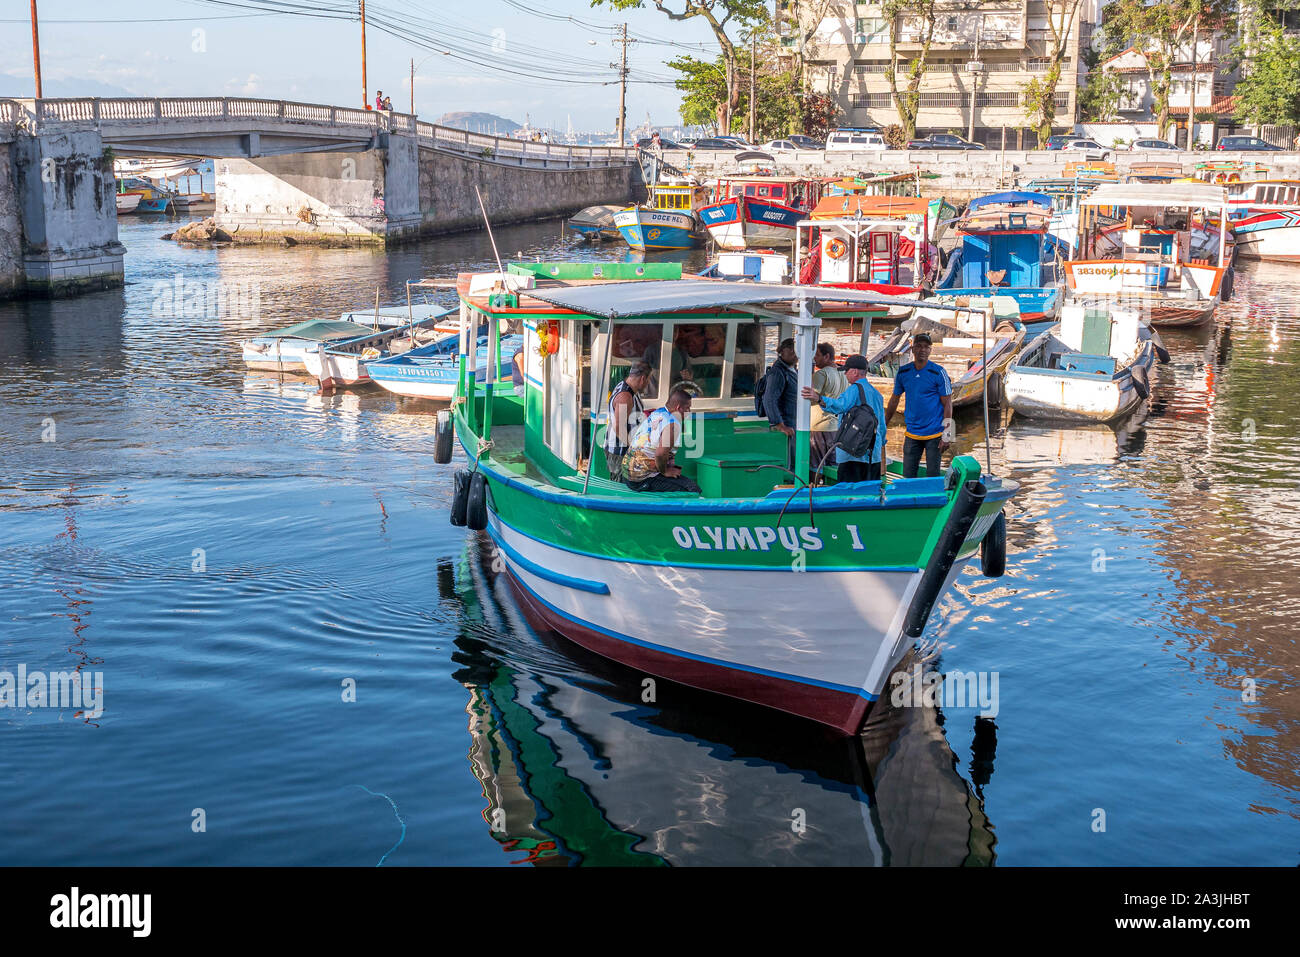 Rio de Janeiro, Brazil - October 5, 2019: Fishing boats at the Quadrado da Urca, a small port, Rio de Janeiro, Brazil Stock Photo